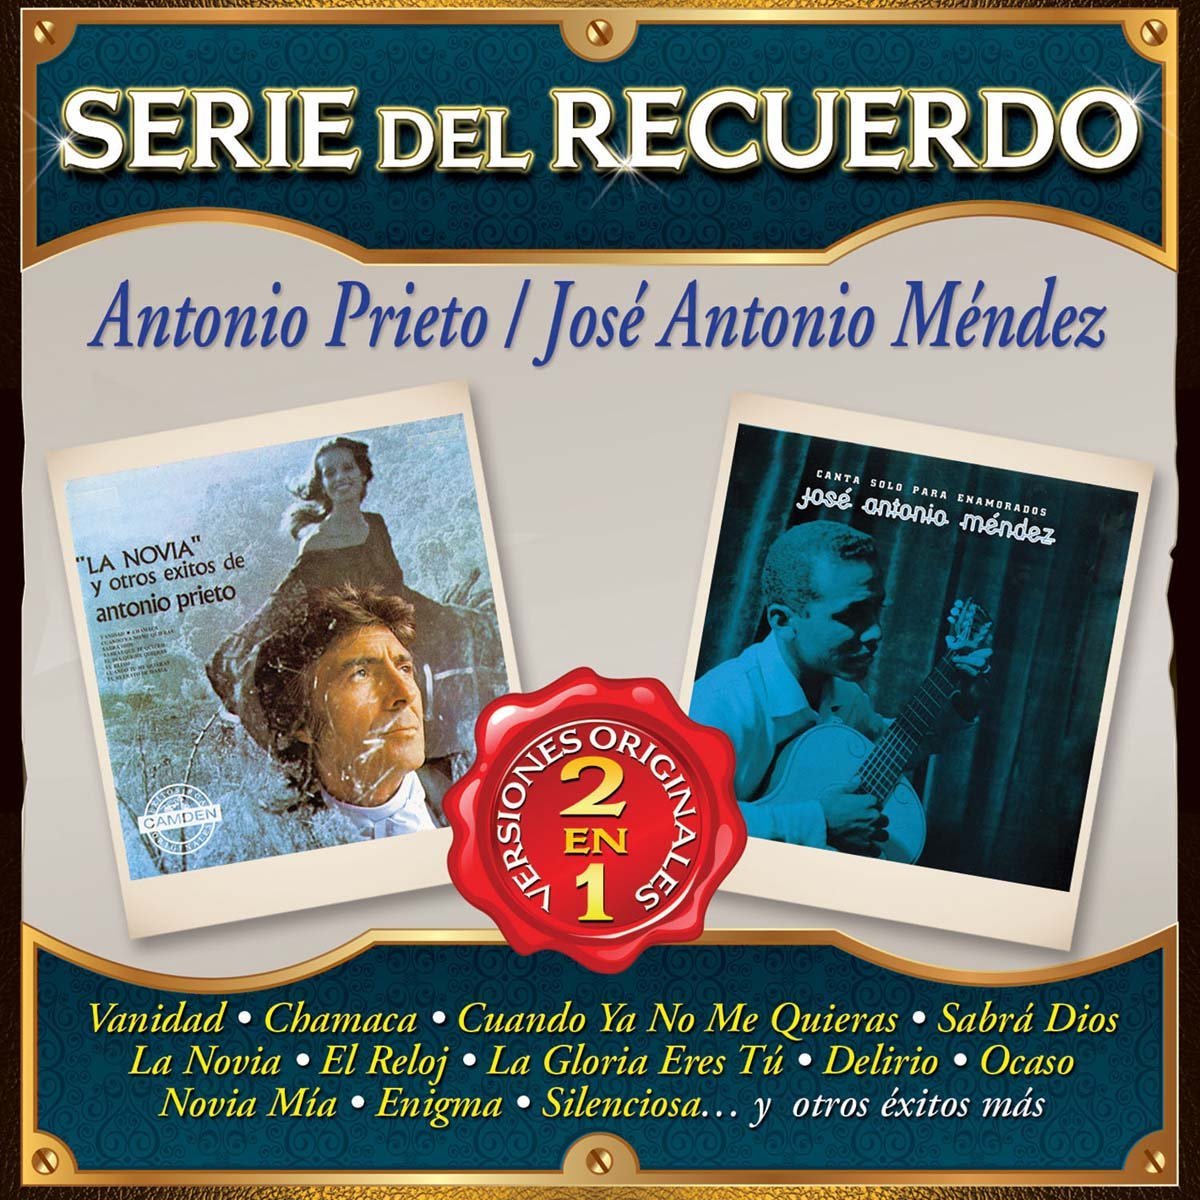 Cd Antonio Prietojose Antonio Mendez Serie Del Recuerdo 2 en 1